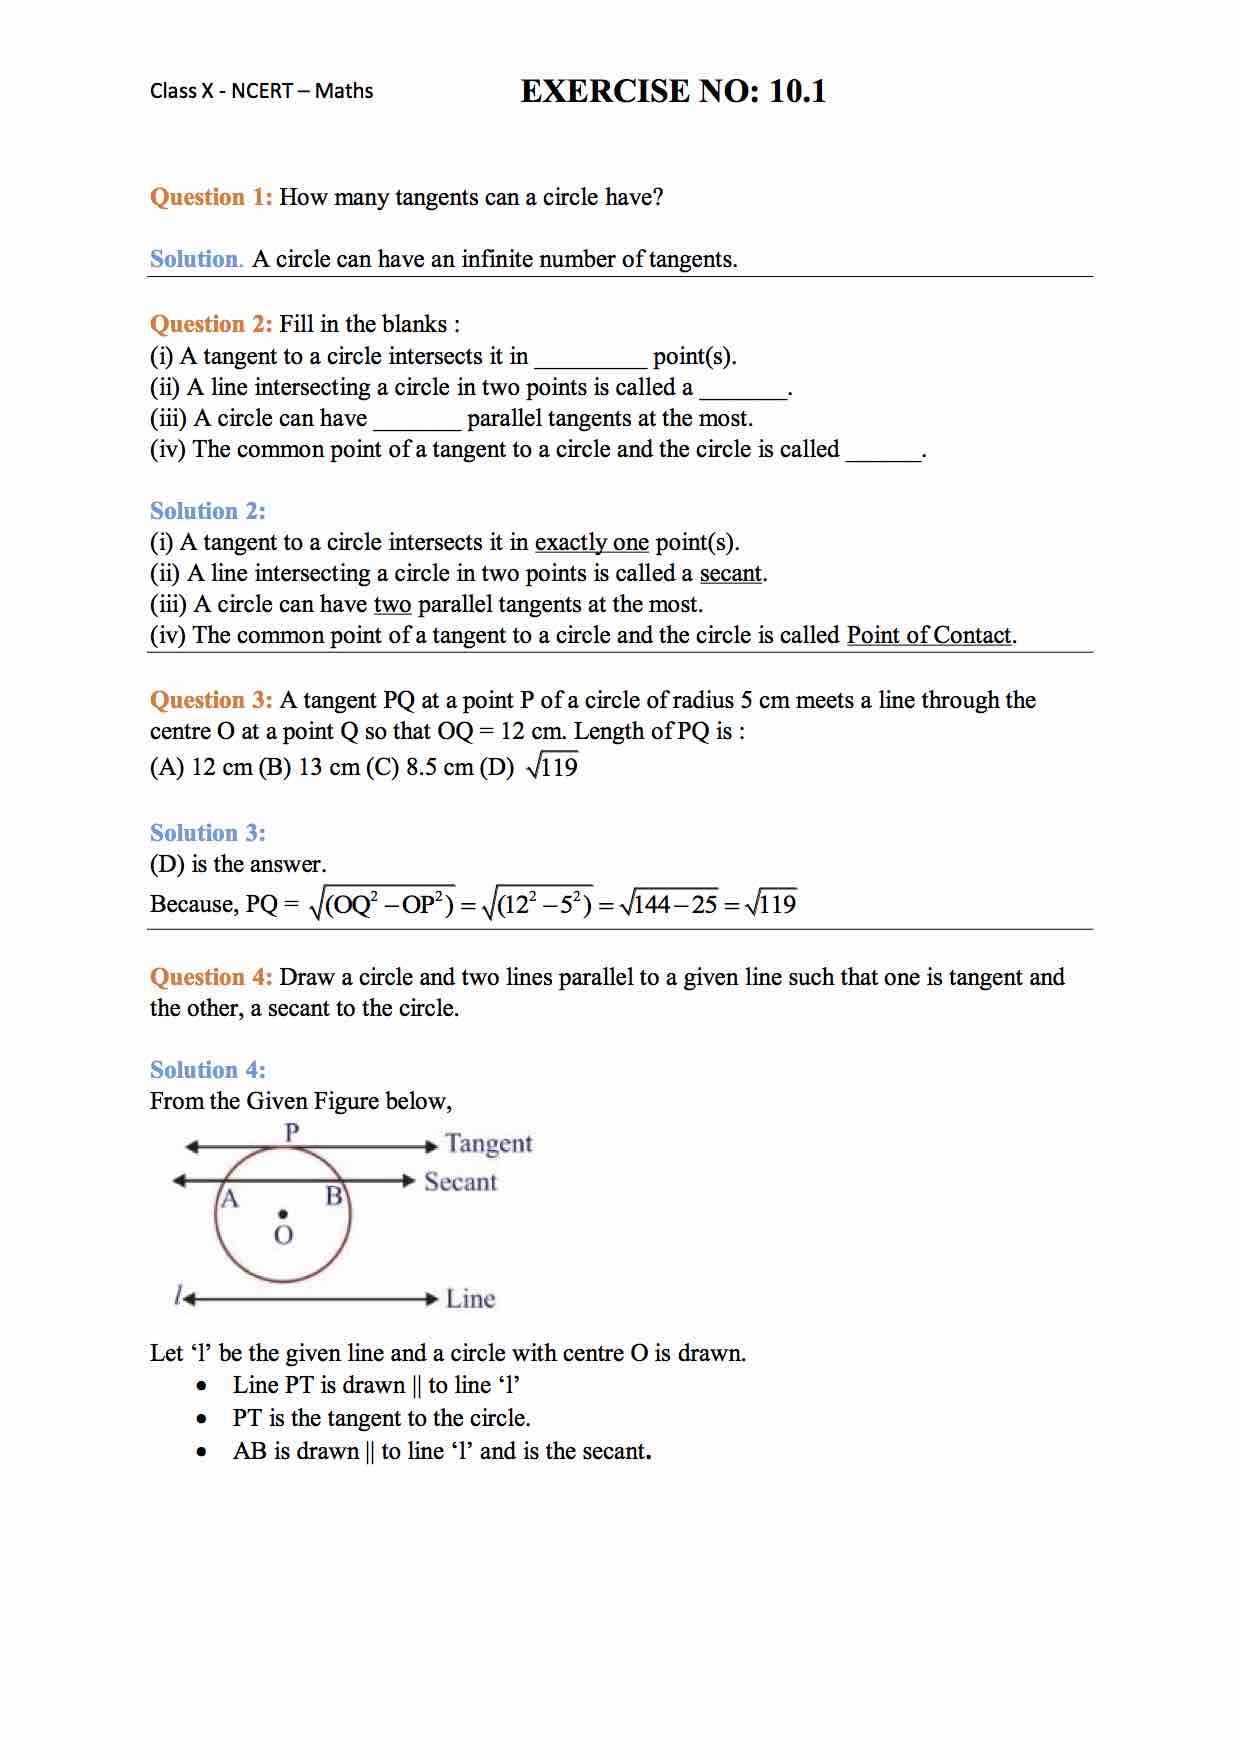 assignment for class 10 math